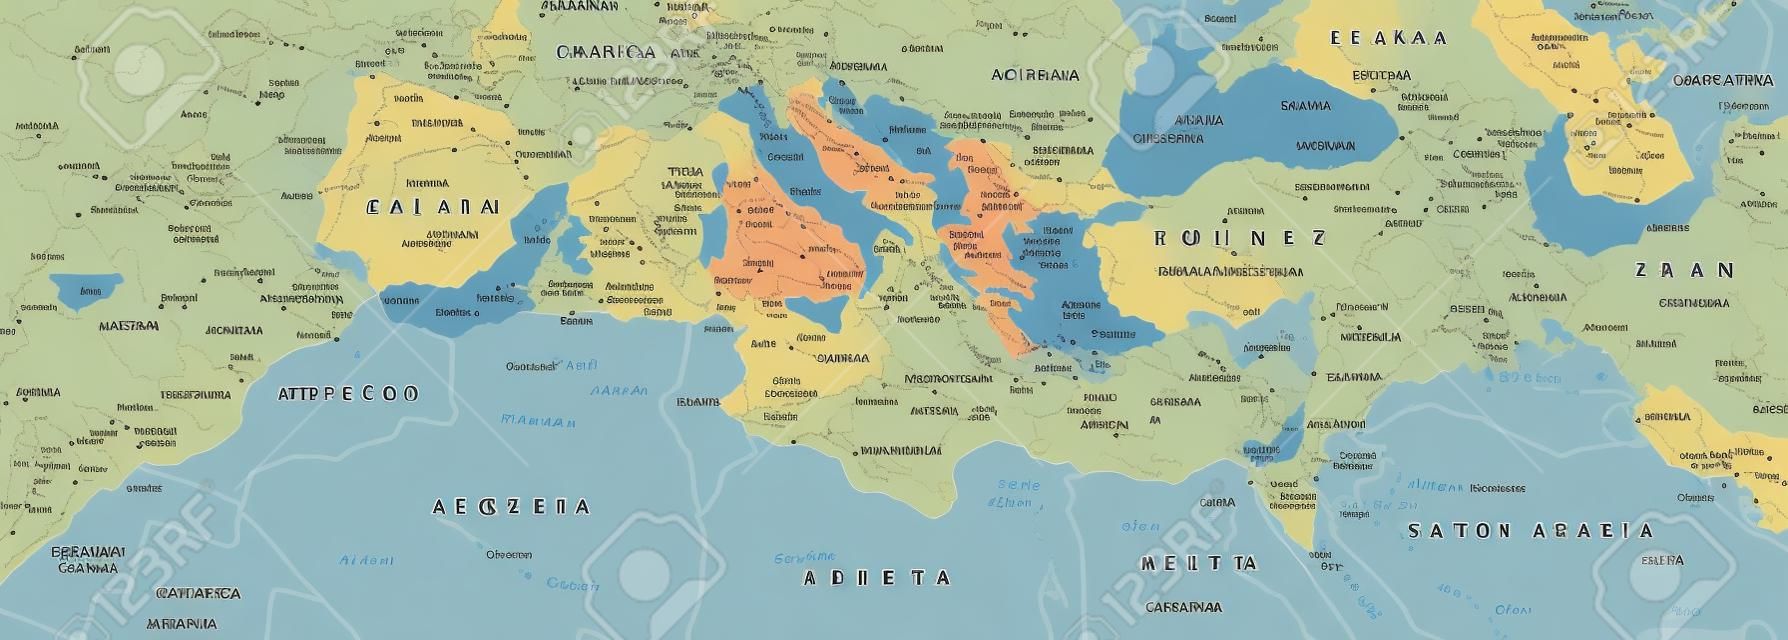 Bassin méditerranéenne Carte politique. Europe du Sud Afrique du Nord et Proche-Orient avec les capitales des frontières nationales rivières et les lacs. Étiquetage anglais et mise à l'échelle. Illustration.